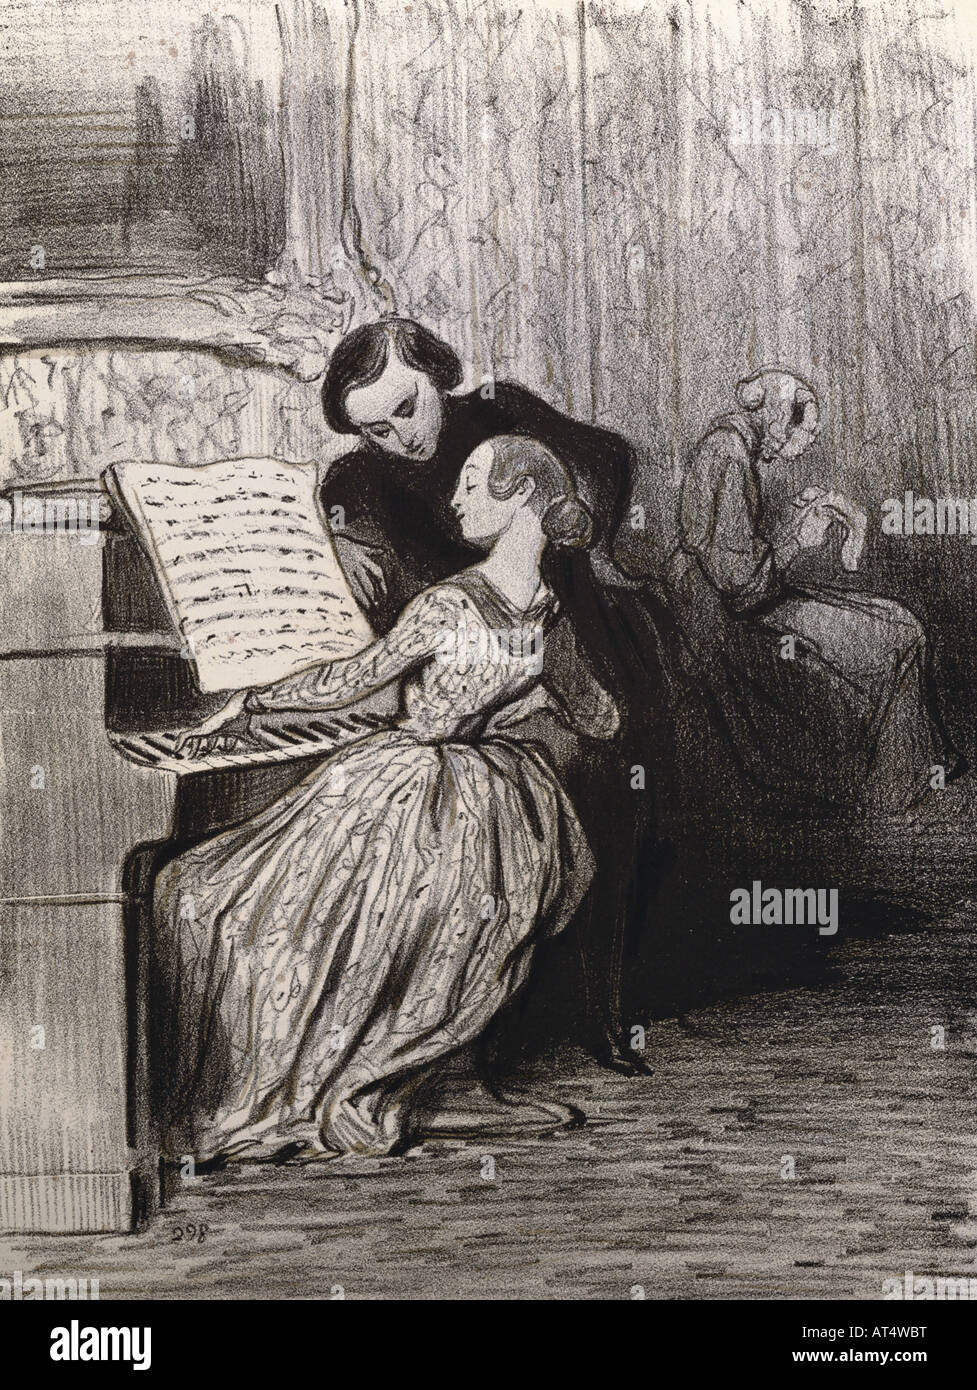 Belle arti, Daumier, Honore (1808 - 1879), grafico, 'La lezione di piano', litografia, 18,5 cm x 24,3 cm, da 'Charivari", collezione privata, artista del diritto d'autore non deve essere cancellata Foto Stock